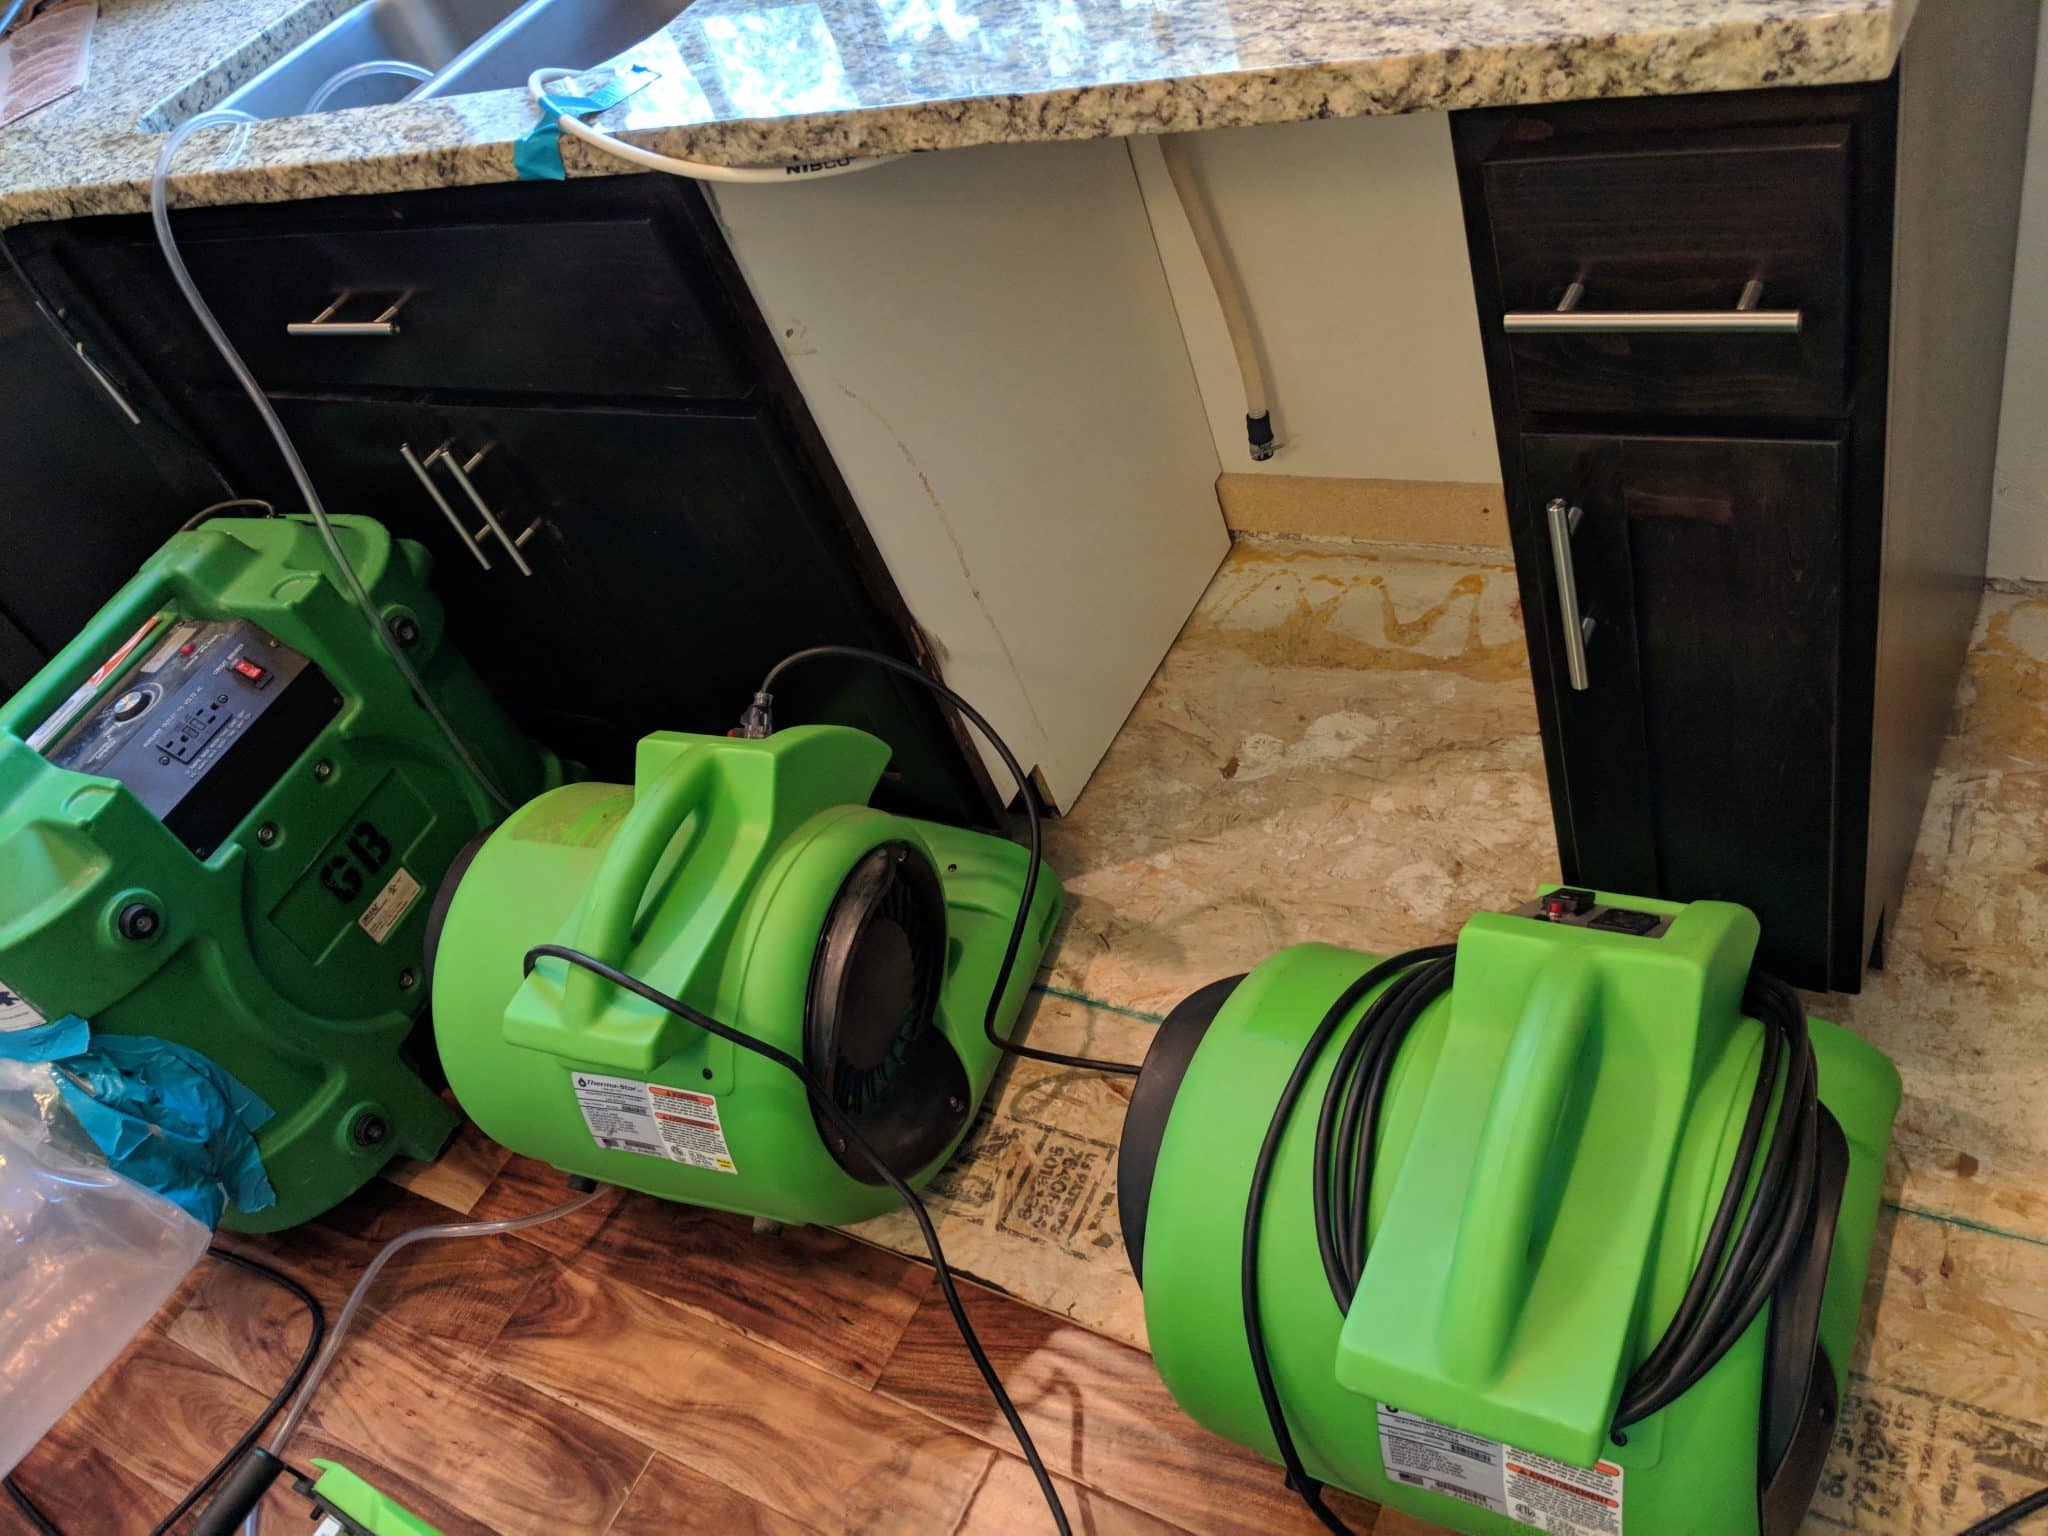 Master Restoration dehumidifiers after dishwasher leak in kitchen